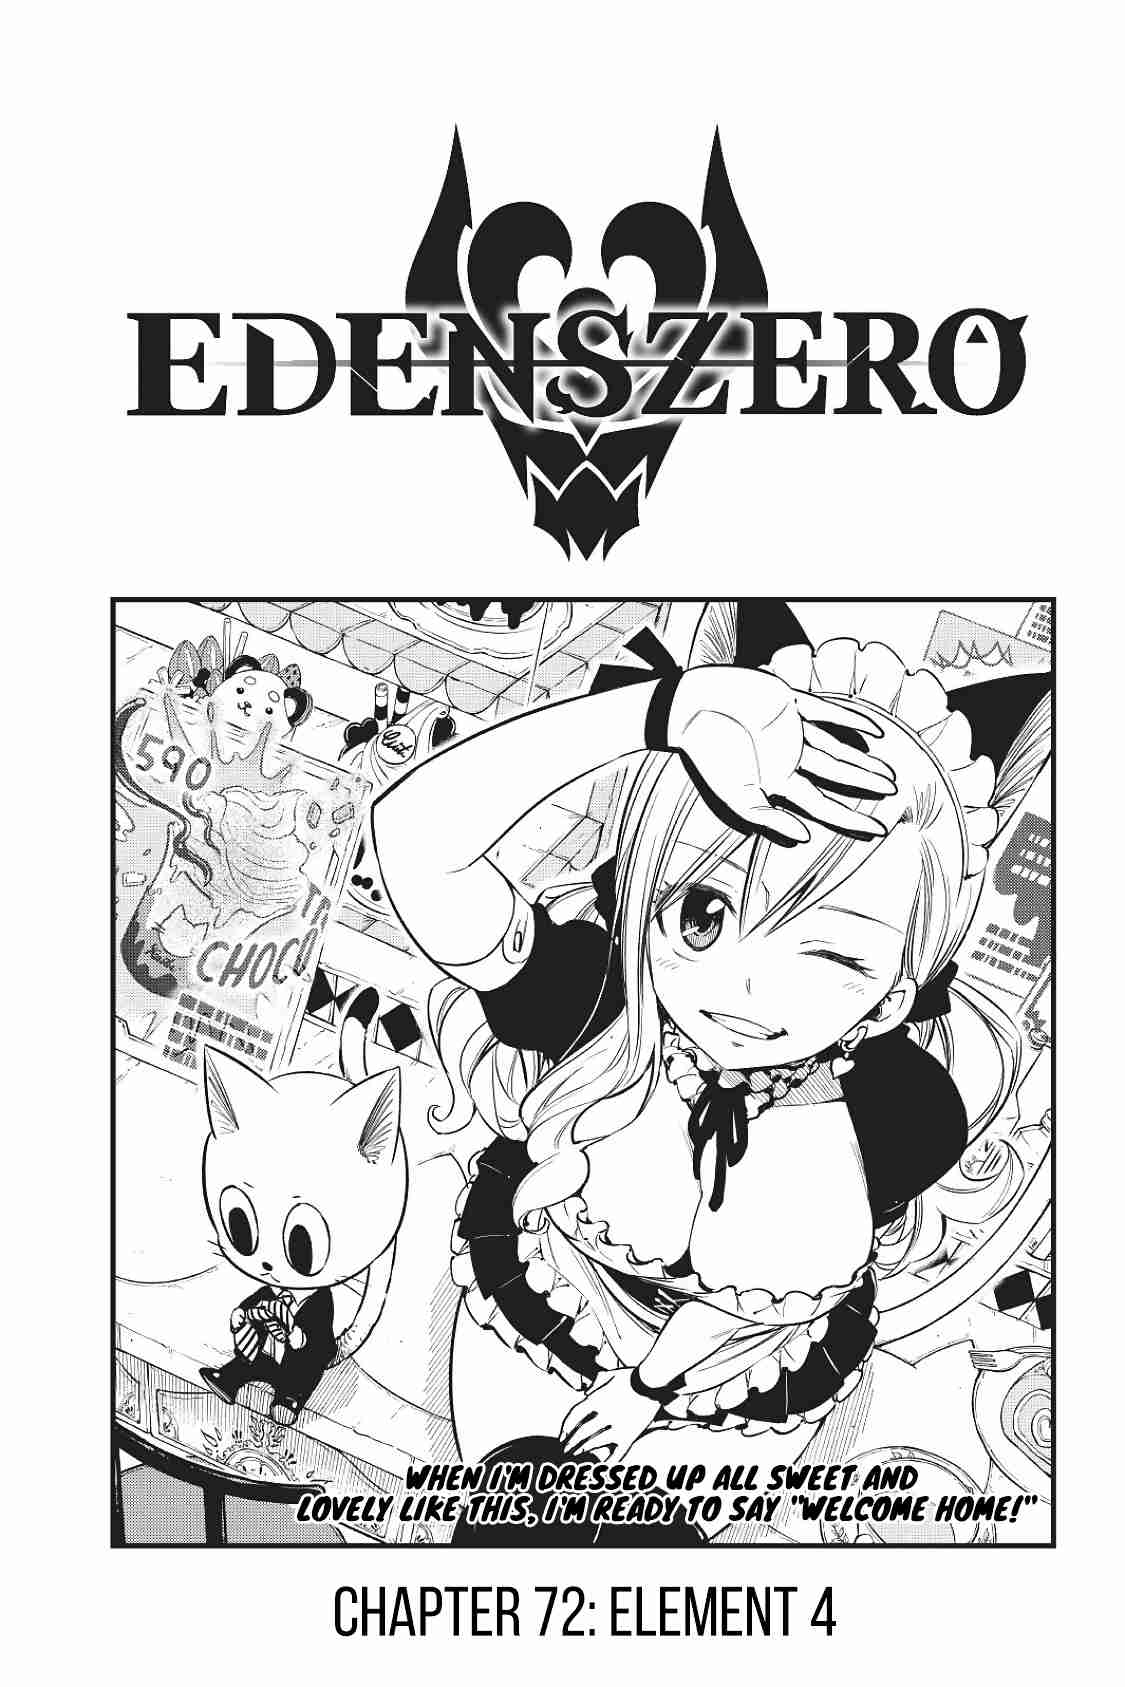 Edens Zero Ch. 72 Element 4